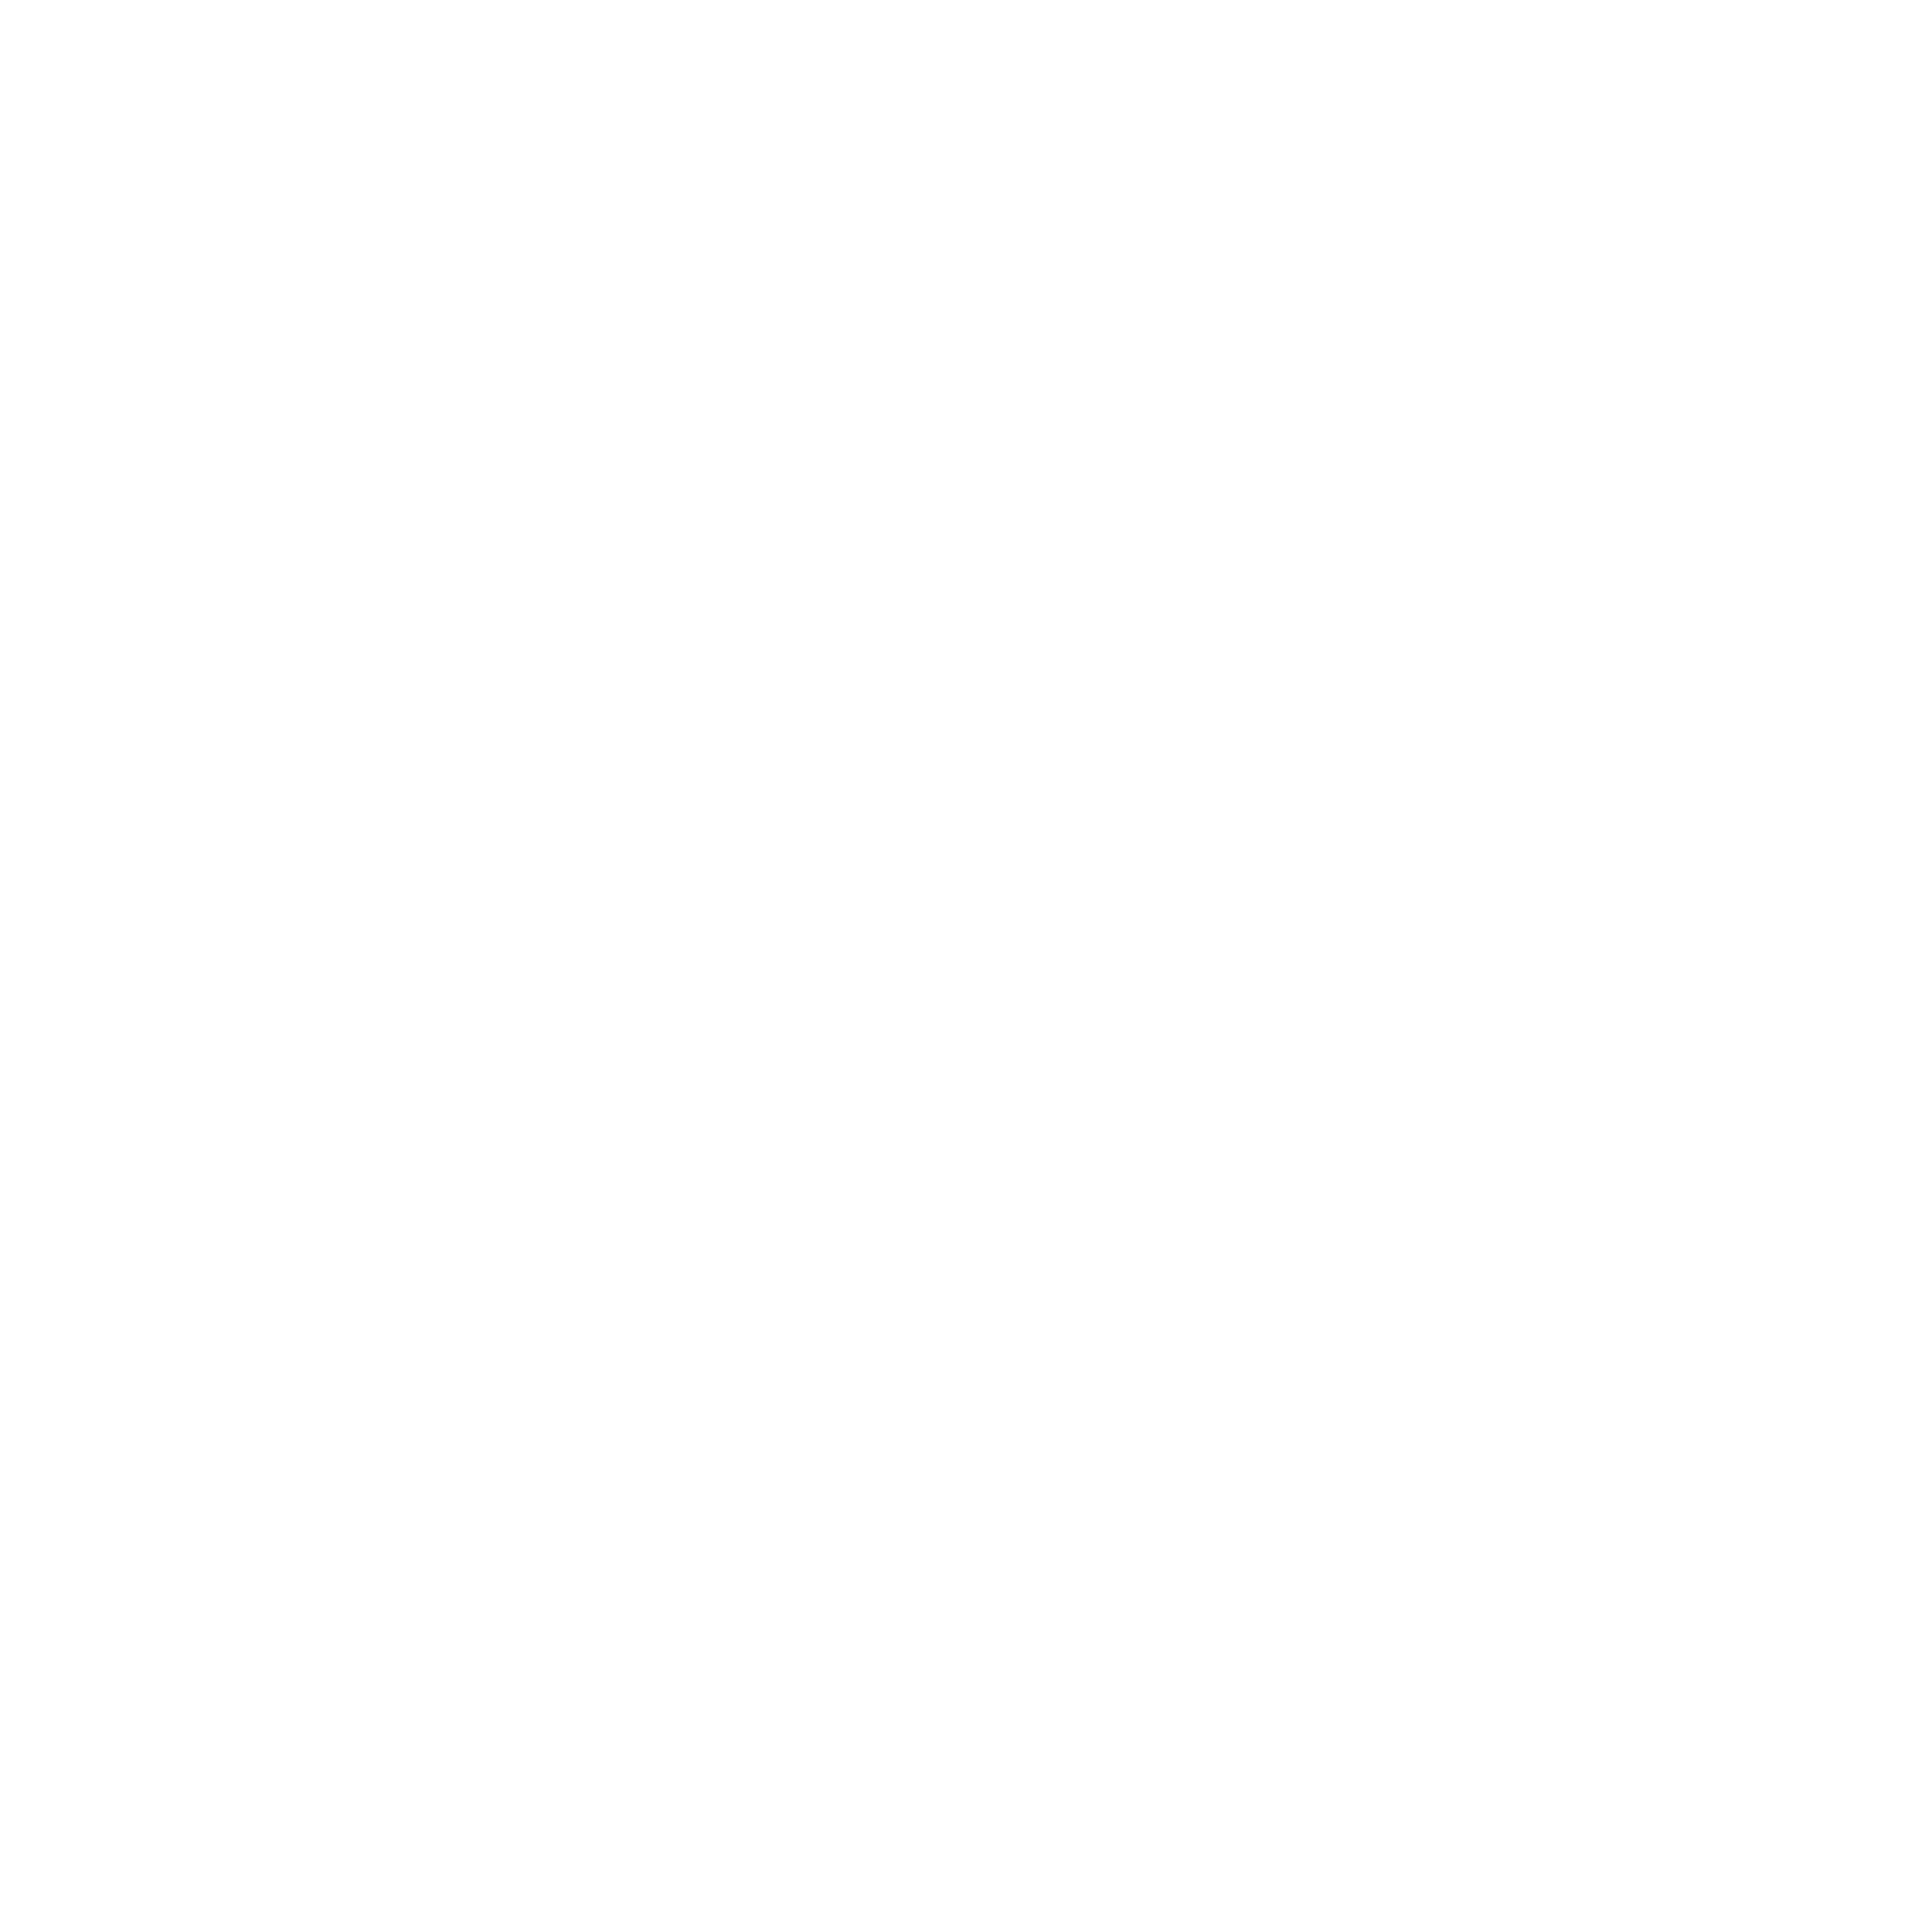 methode-brigitte-kettner-logo-black-and-white